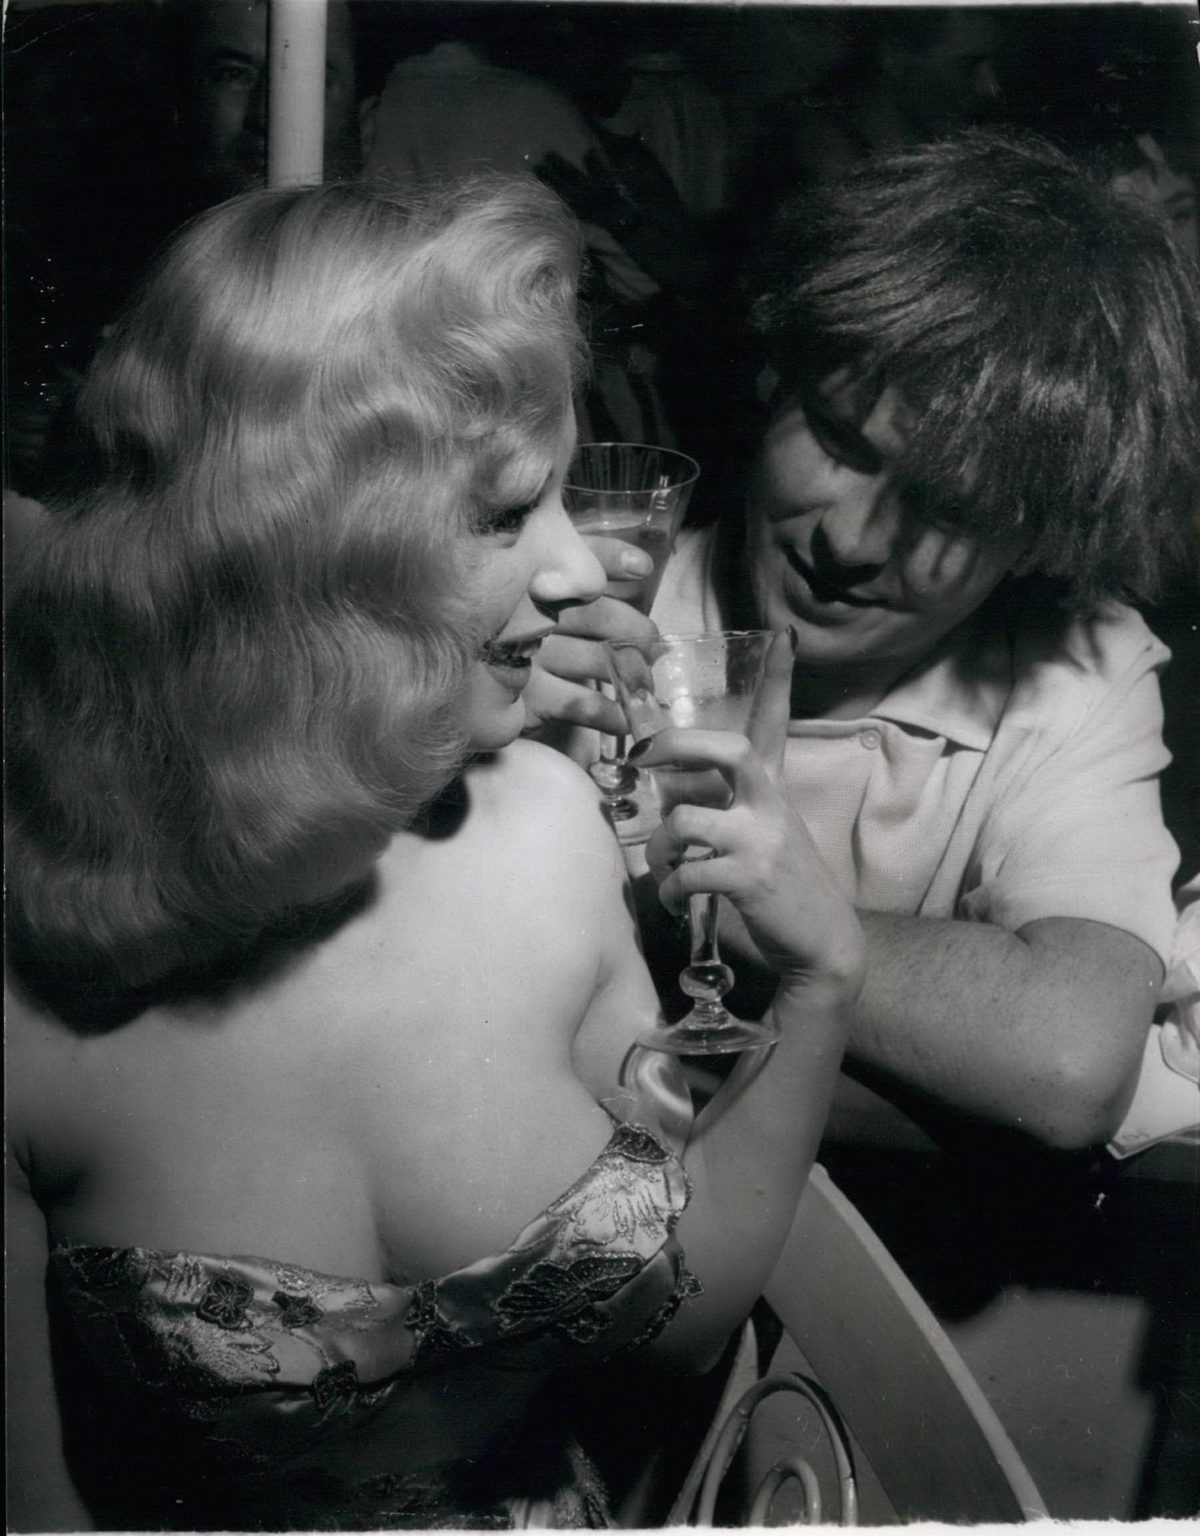 Sabrina at a 'ball' in 1972